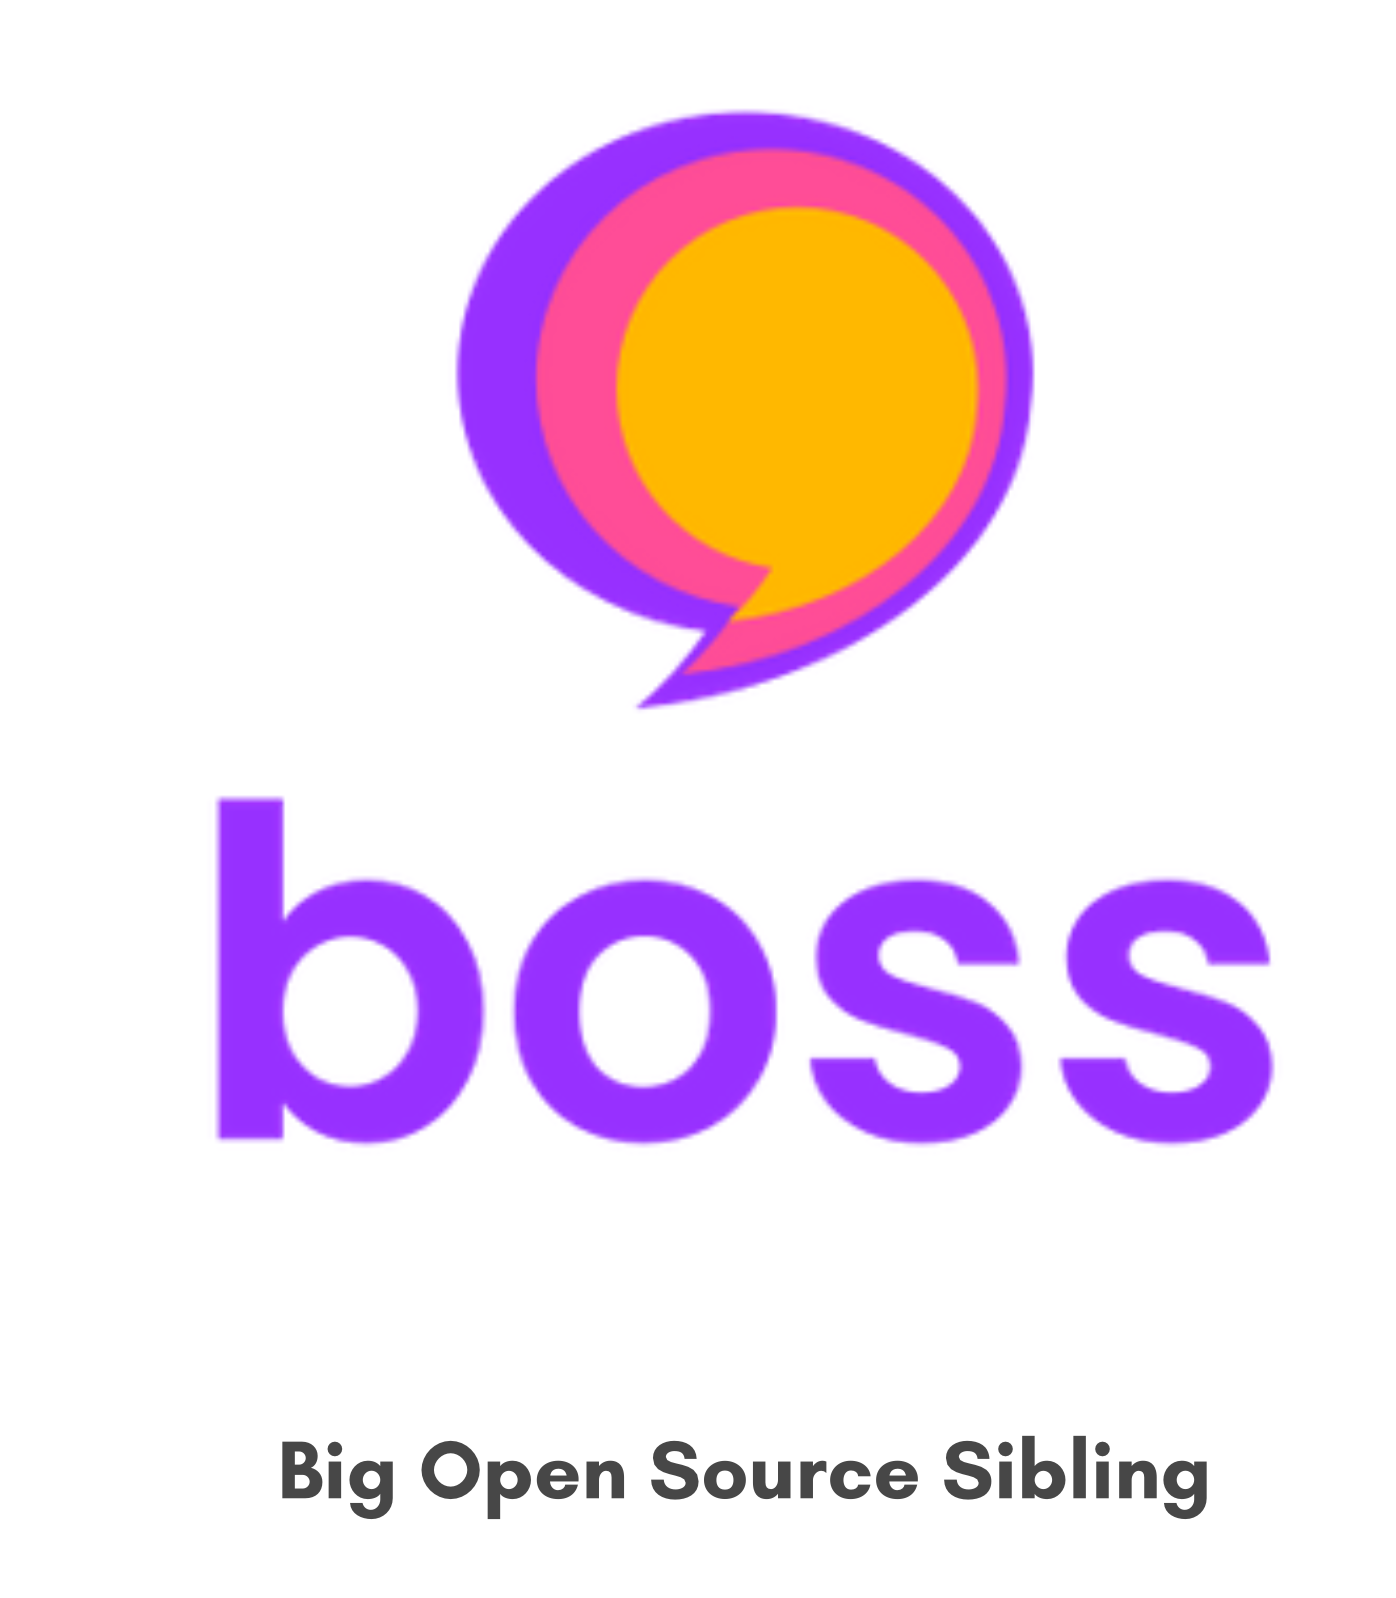 BOSS - Big Open Source Siblings (2020 - Em andamento)